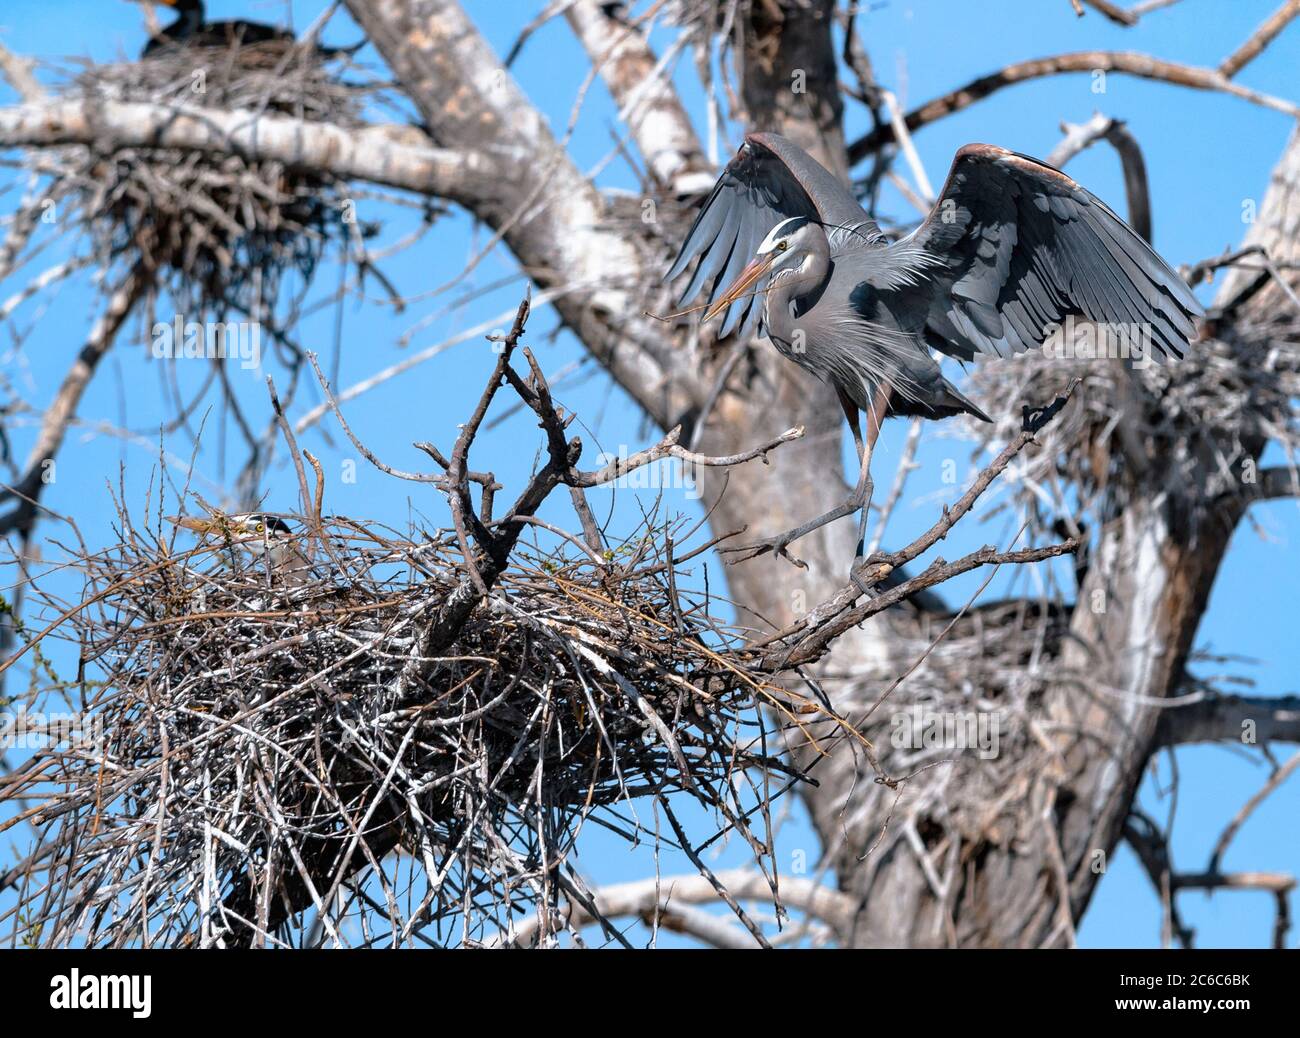 Un grande airone blu fa un passo verso il suo nido con un bastone nel suo conto, mentre la femmina, accoccolata nel nido, incuba le uova. Foto Stock